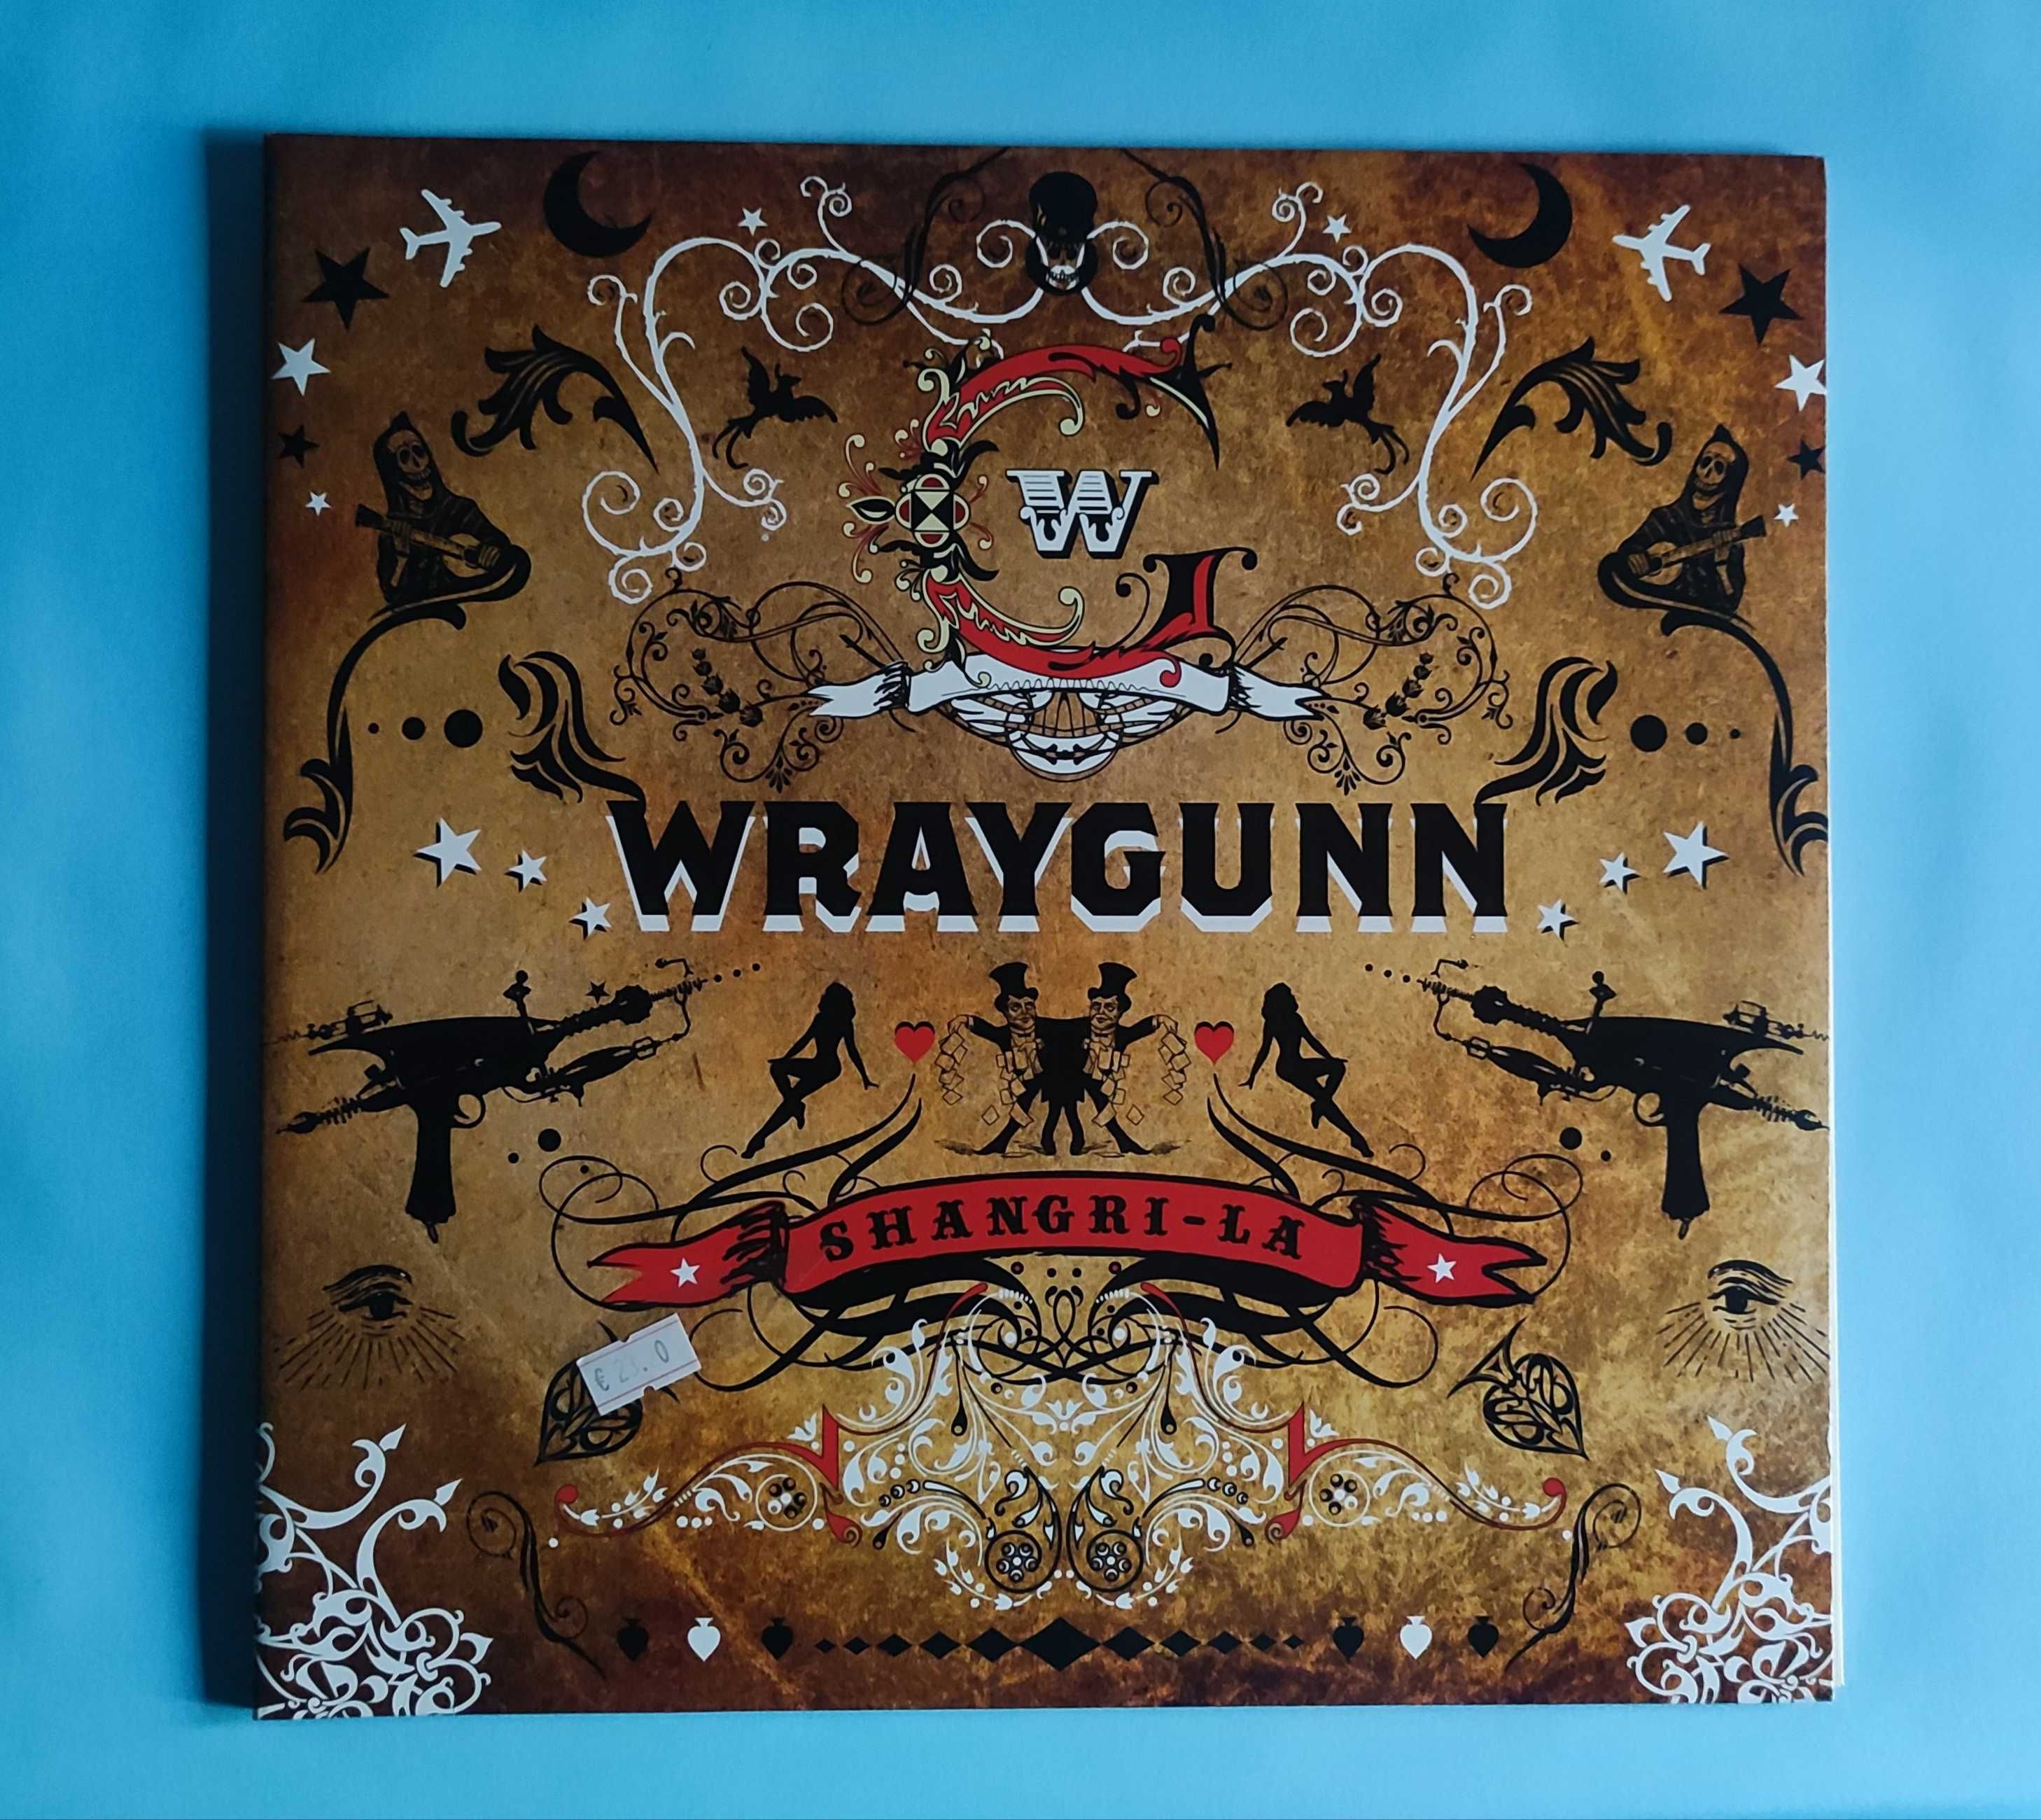 LP - WRAYGUNN - A Wraygunn Double Joint: Eclesiastes 1.11 / Shangri-La